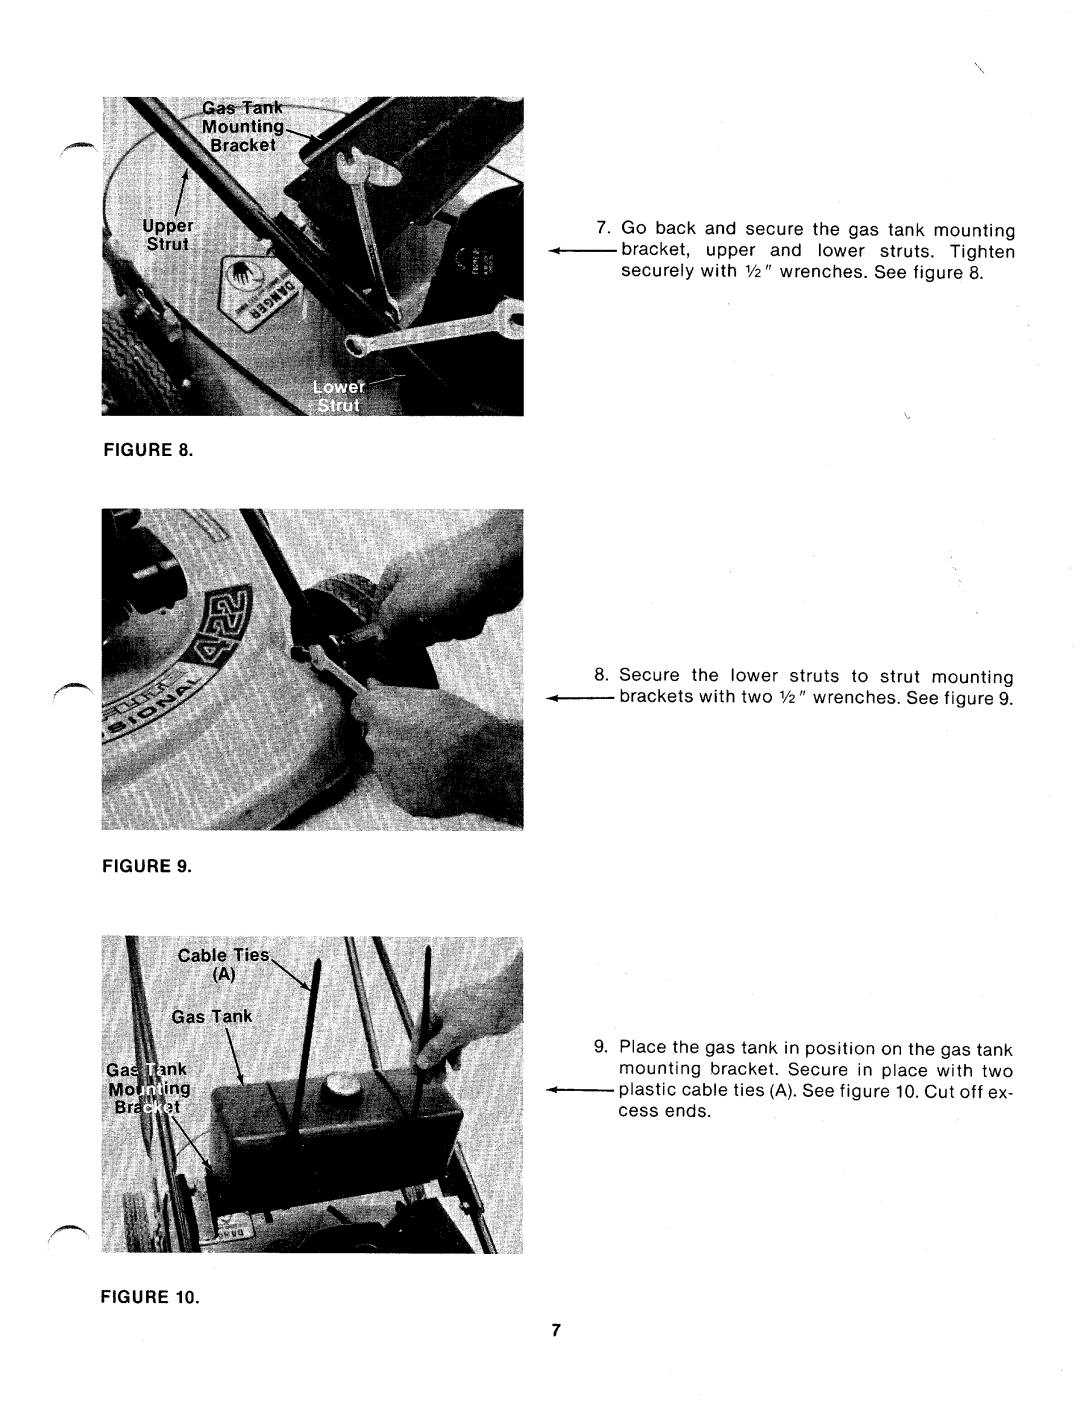 MTD 111-638A manual 